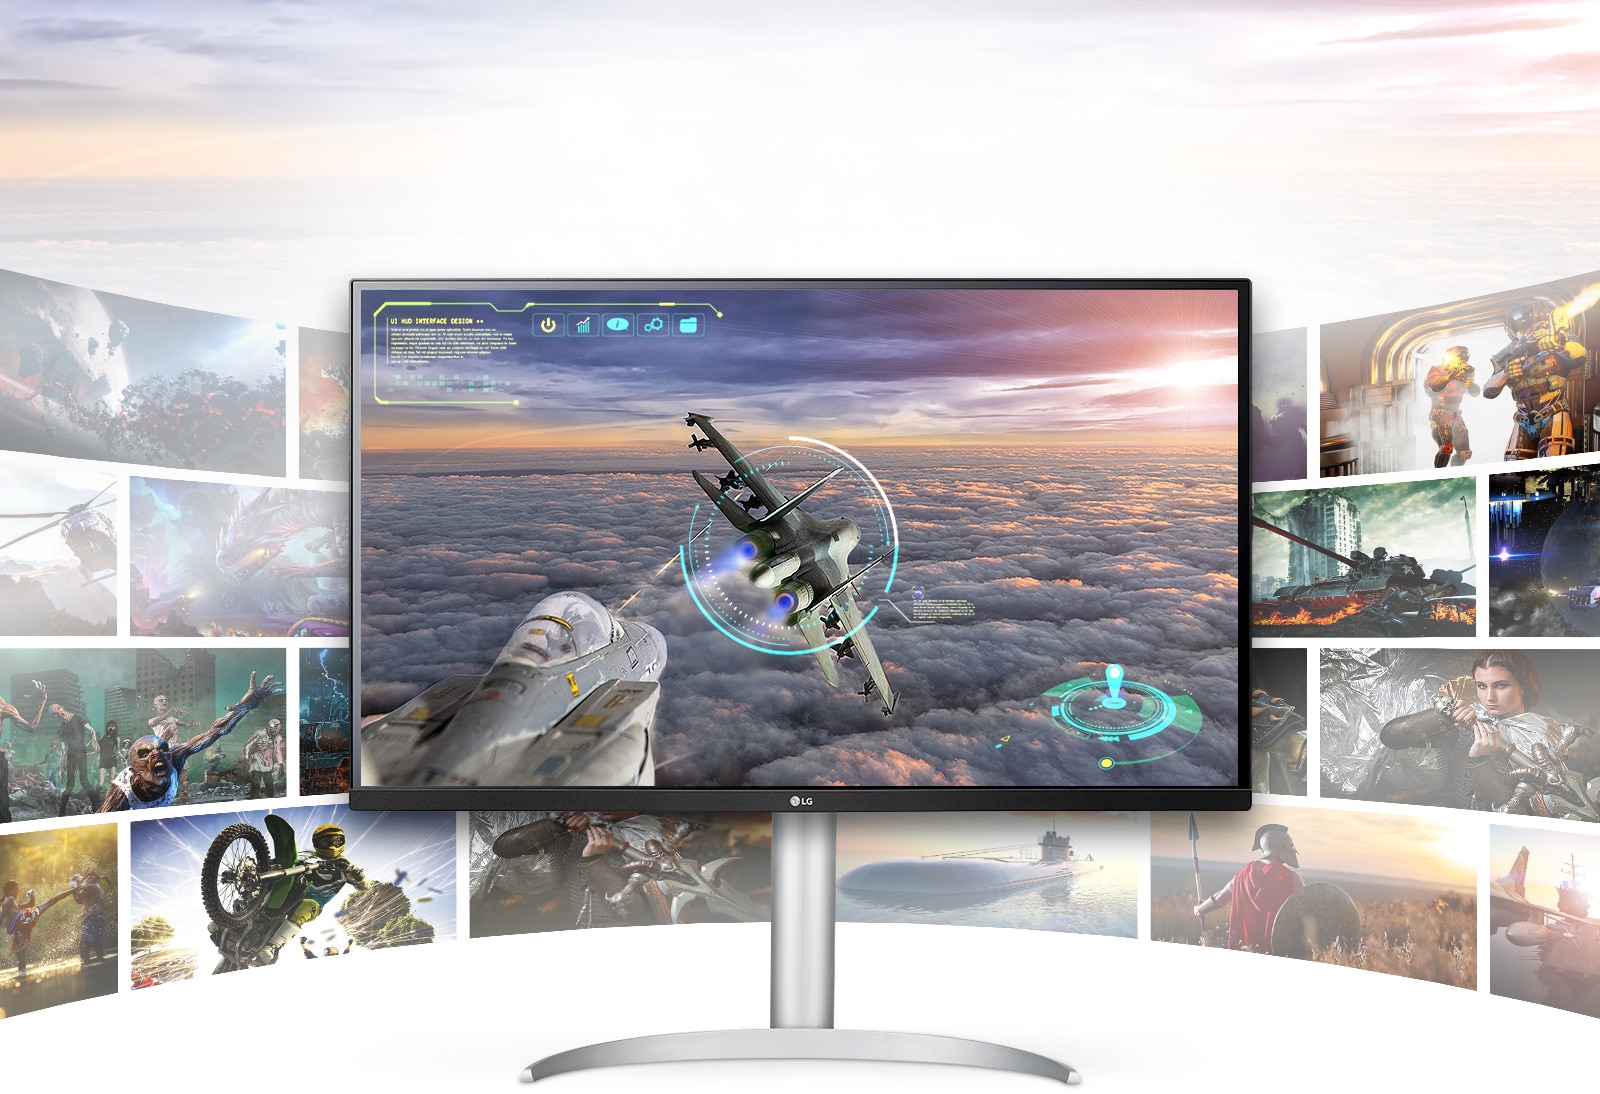 תצוגת LG UHD 4K מקנה לסצנות המשחקים איכות צלולה להדהים ופירוט עשיר.